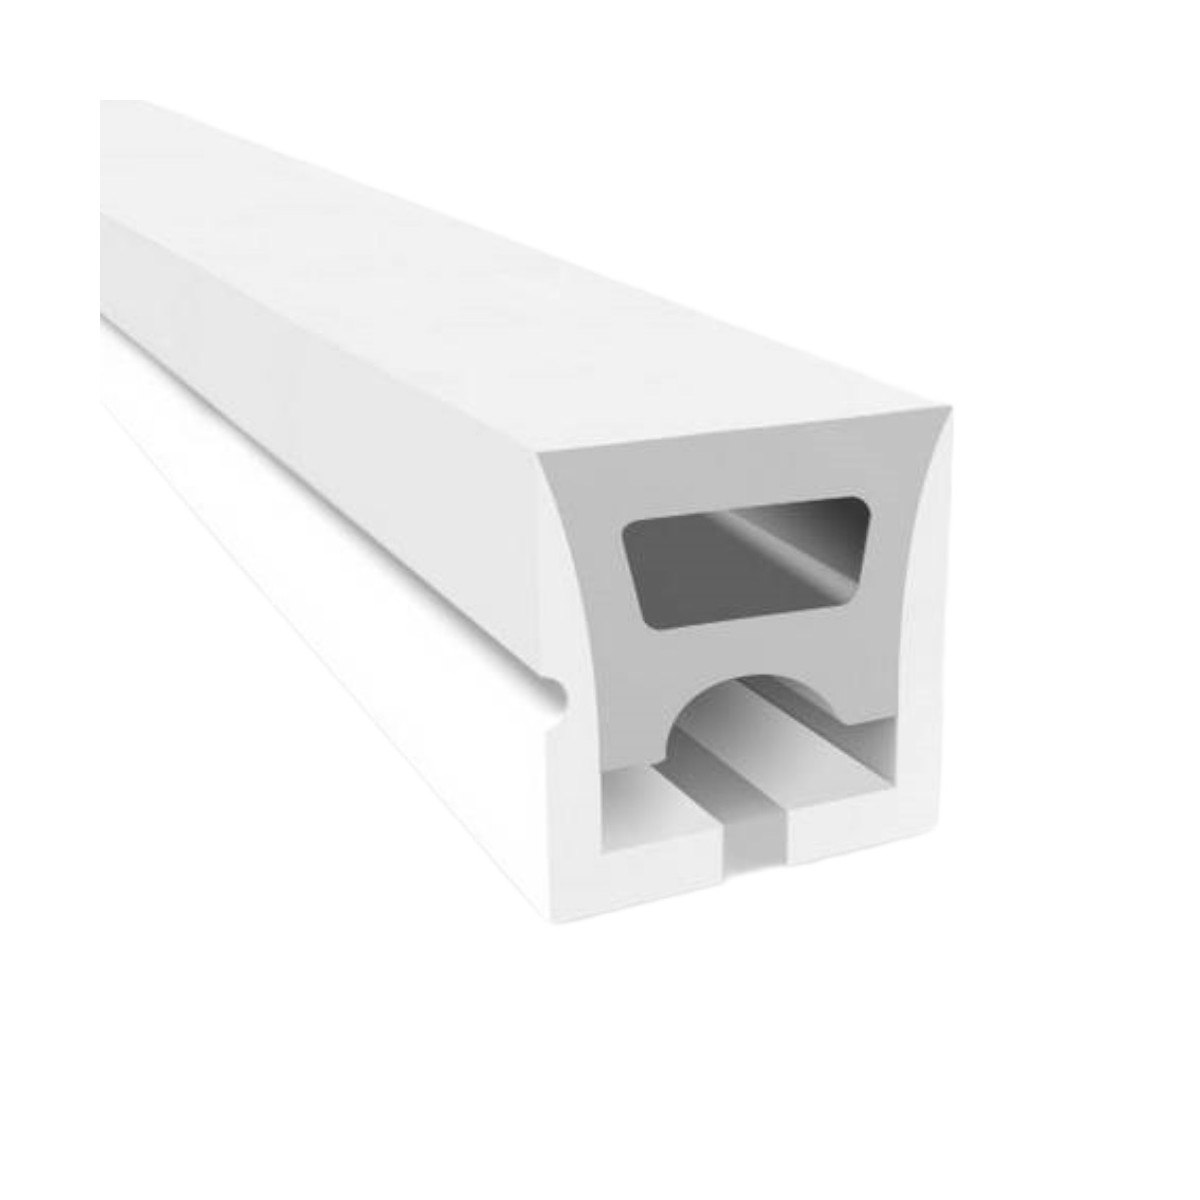 Funda de silicona flexible para convertir tira LED a neón - 16x16mm - 5 metros - Curvatura horizontal